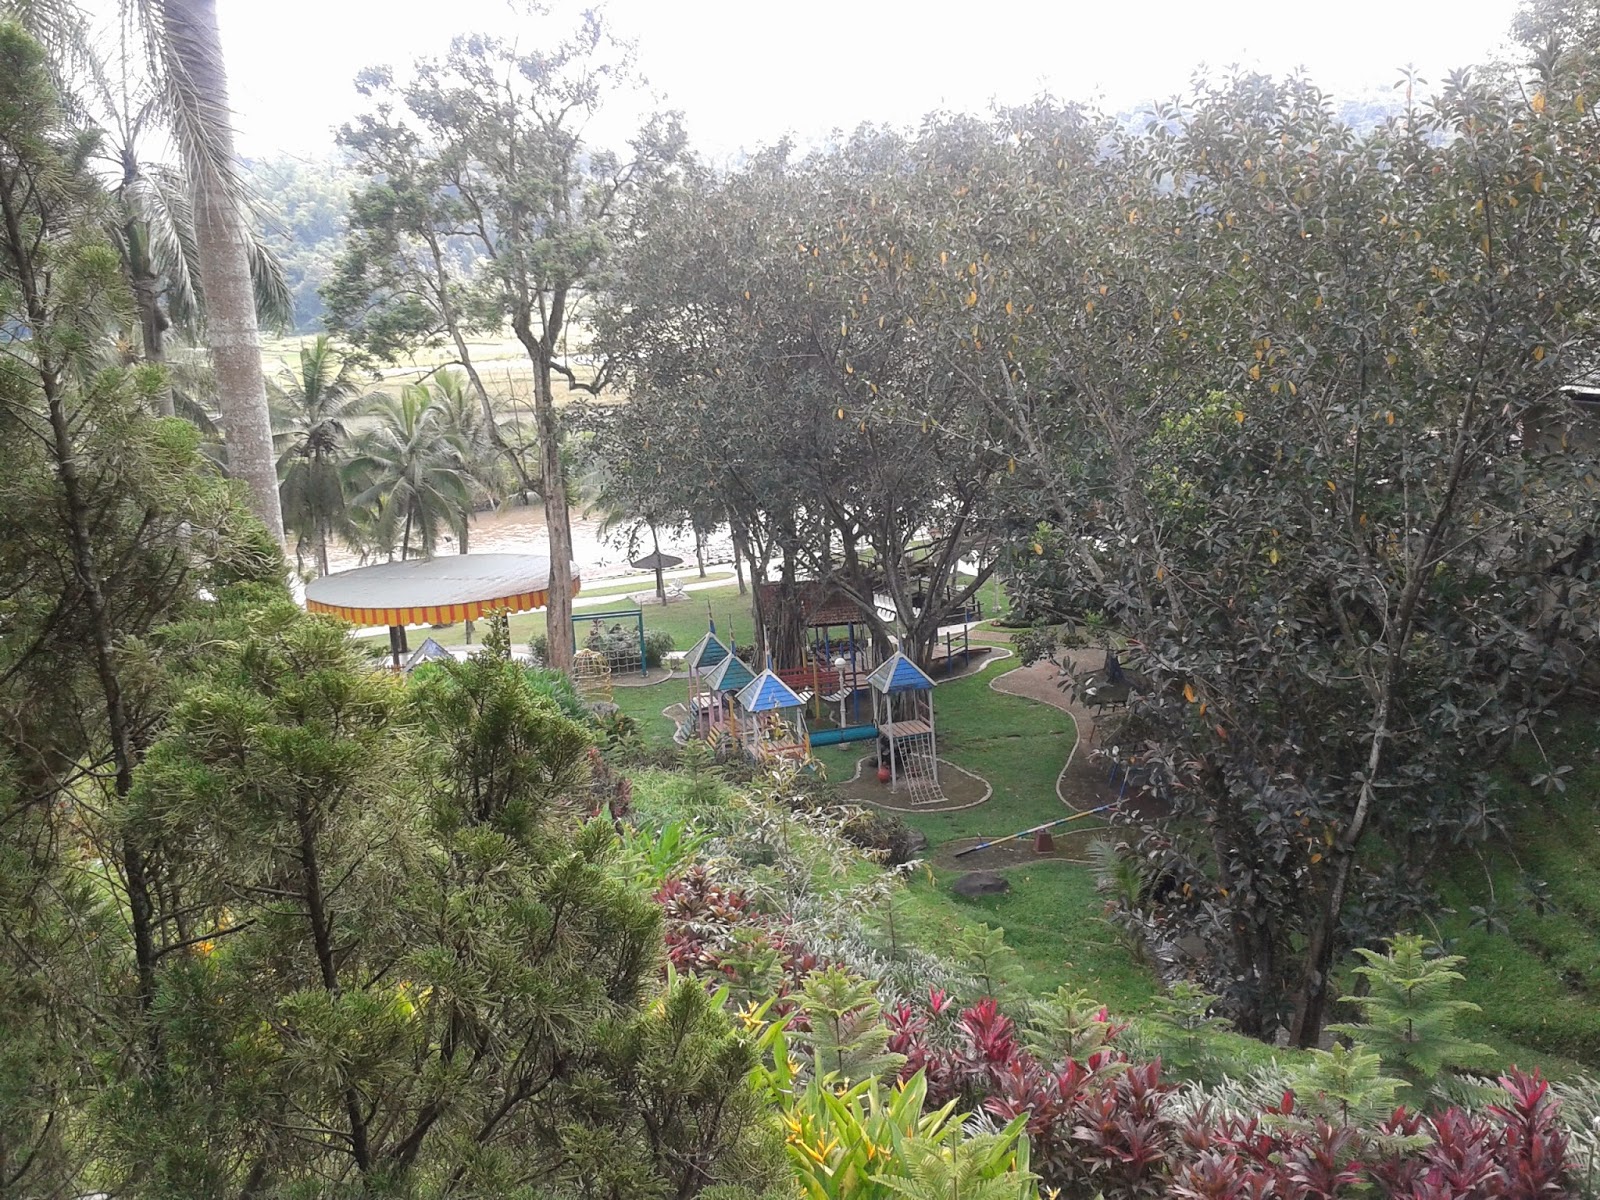 Suasana di hotel Puri Asri, Magelang